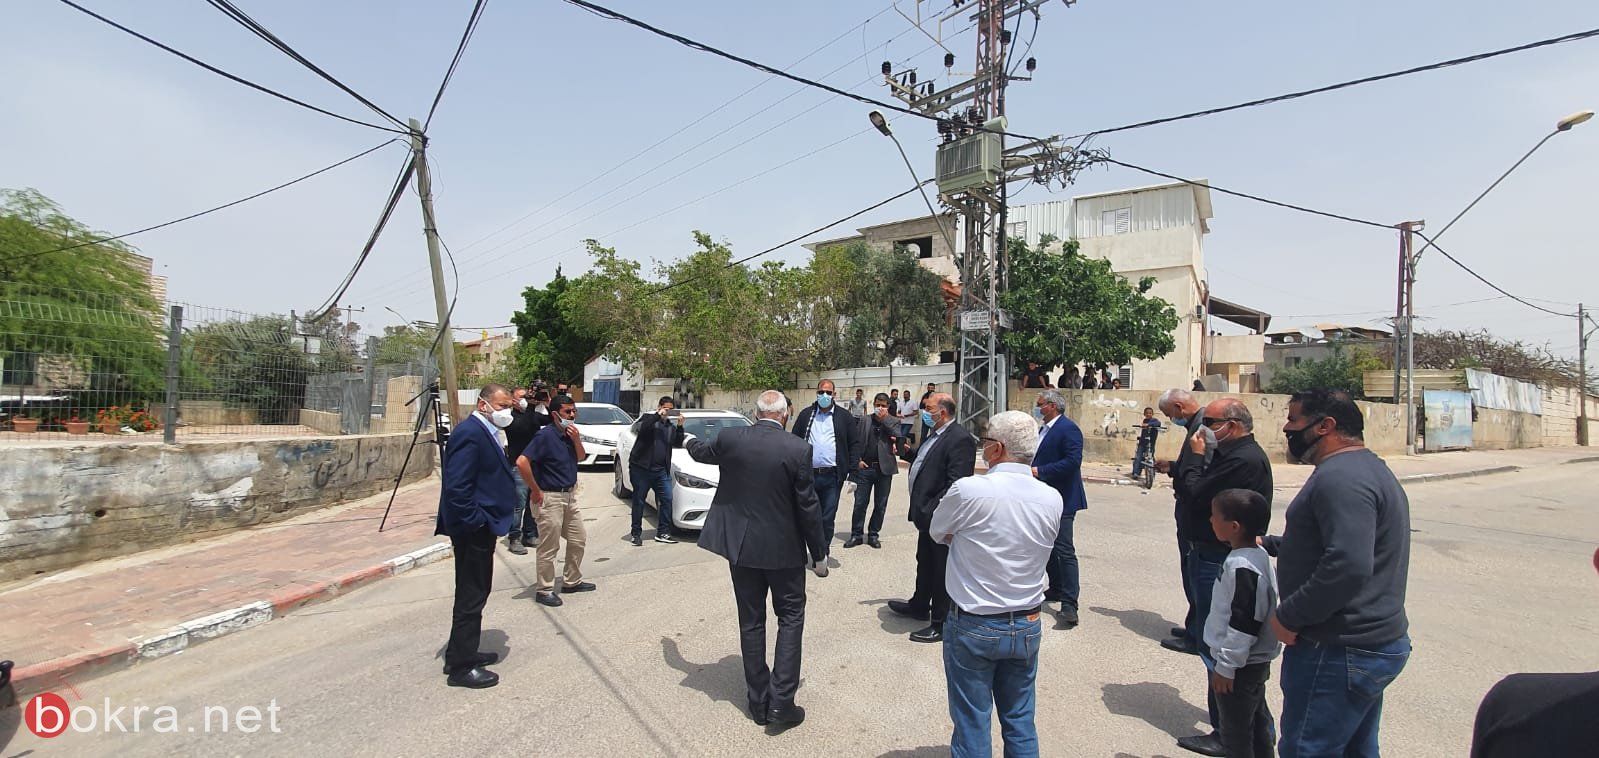 لجنة مكافحة العنف برئاسة د. منصور عباس تنعقد في رهط وتقوم بجولة ميدانية في حي التقوى-4